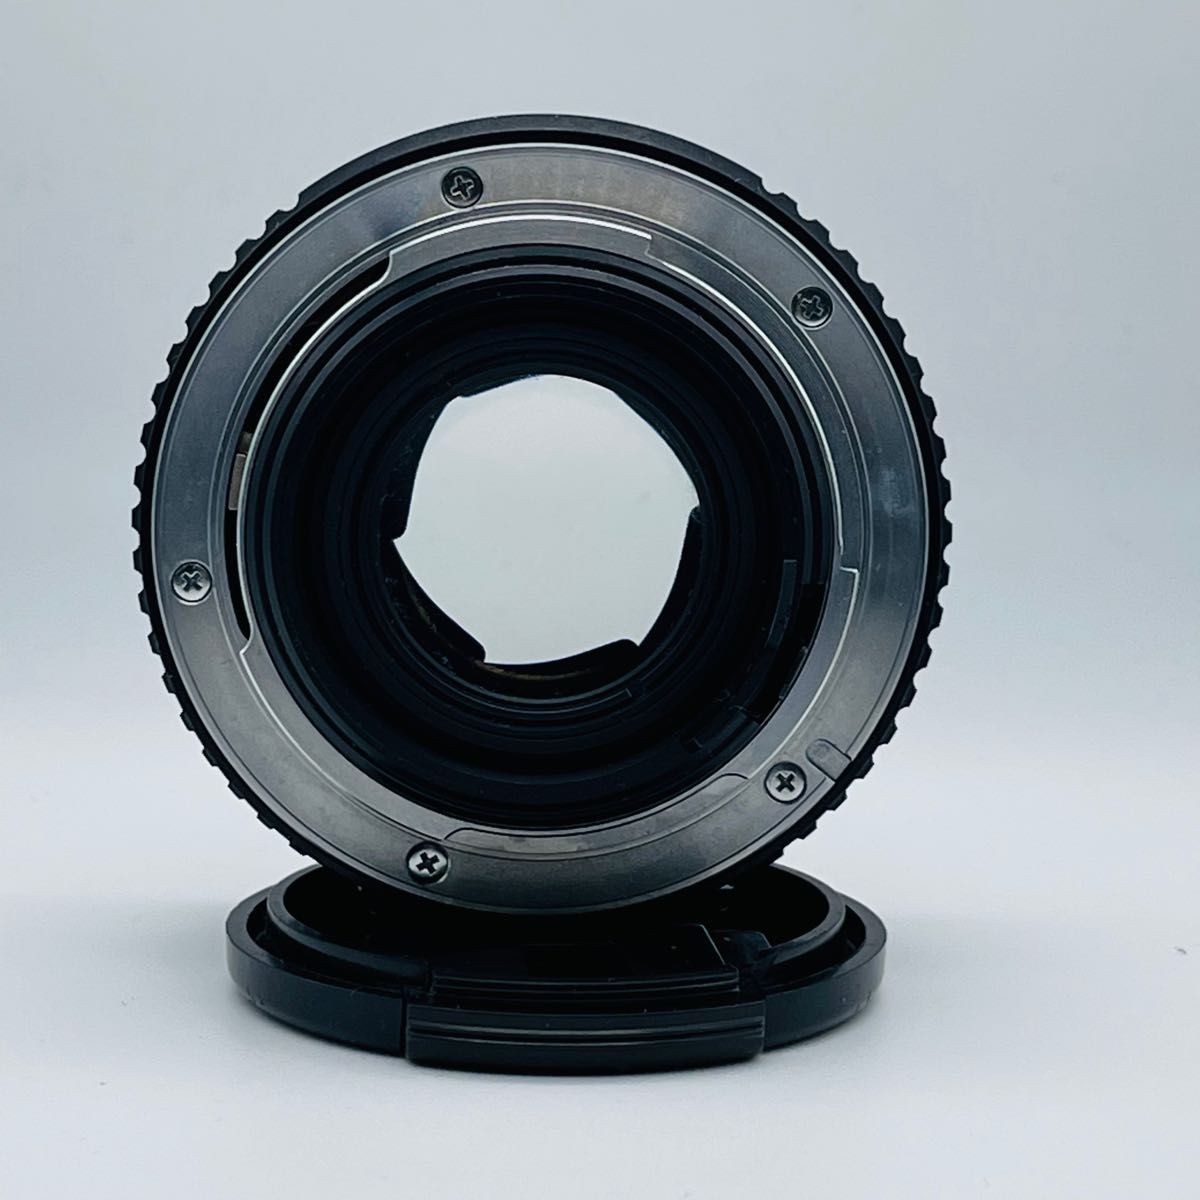 単焦点レンズ    PENTAX-M  1:1.7  50mm